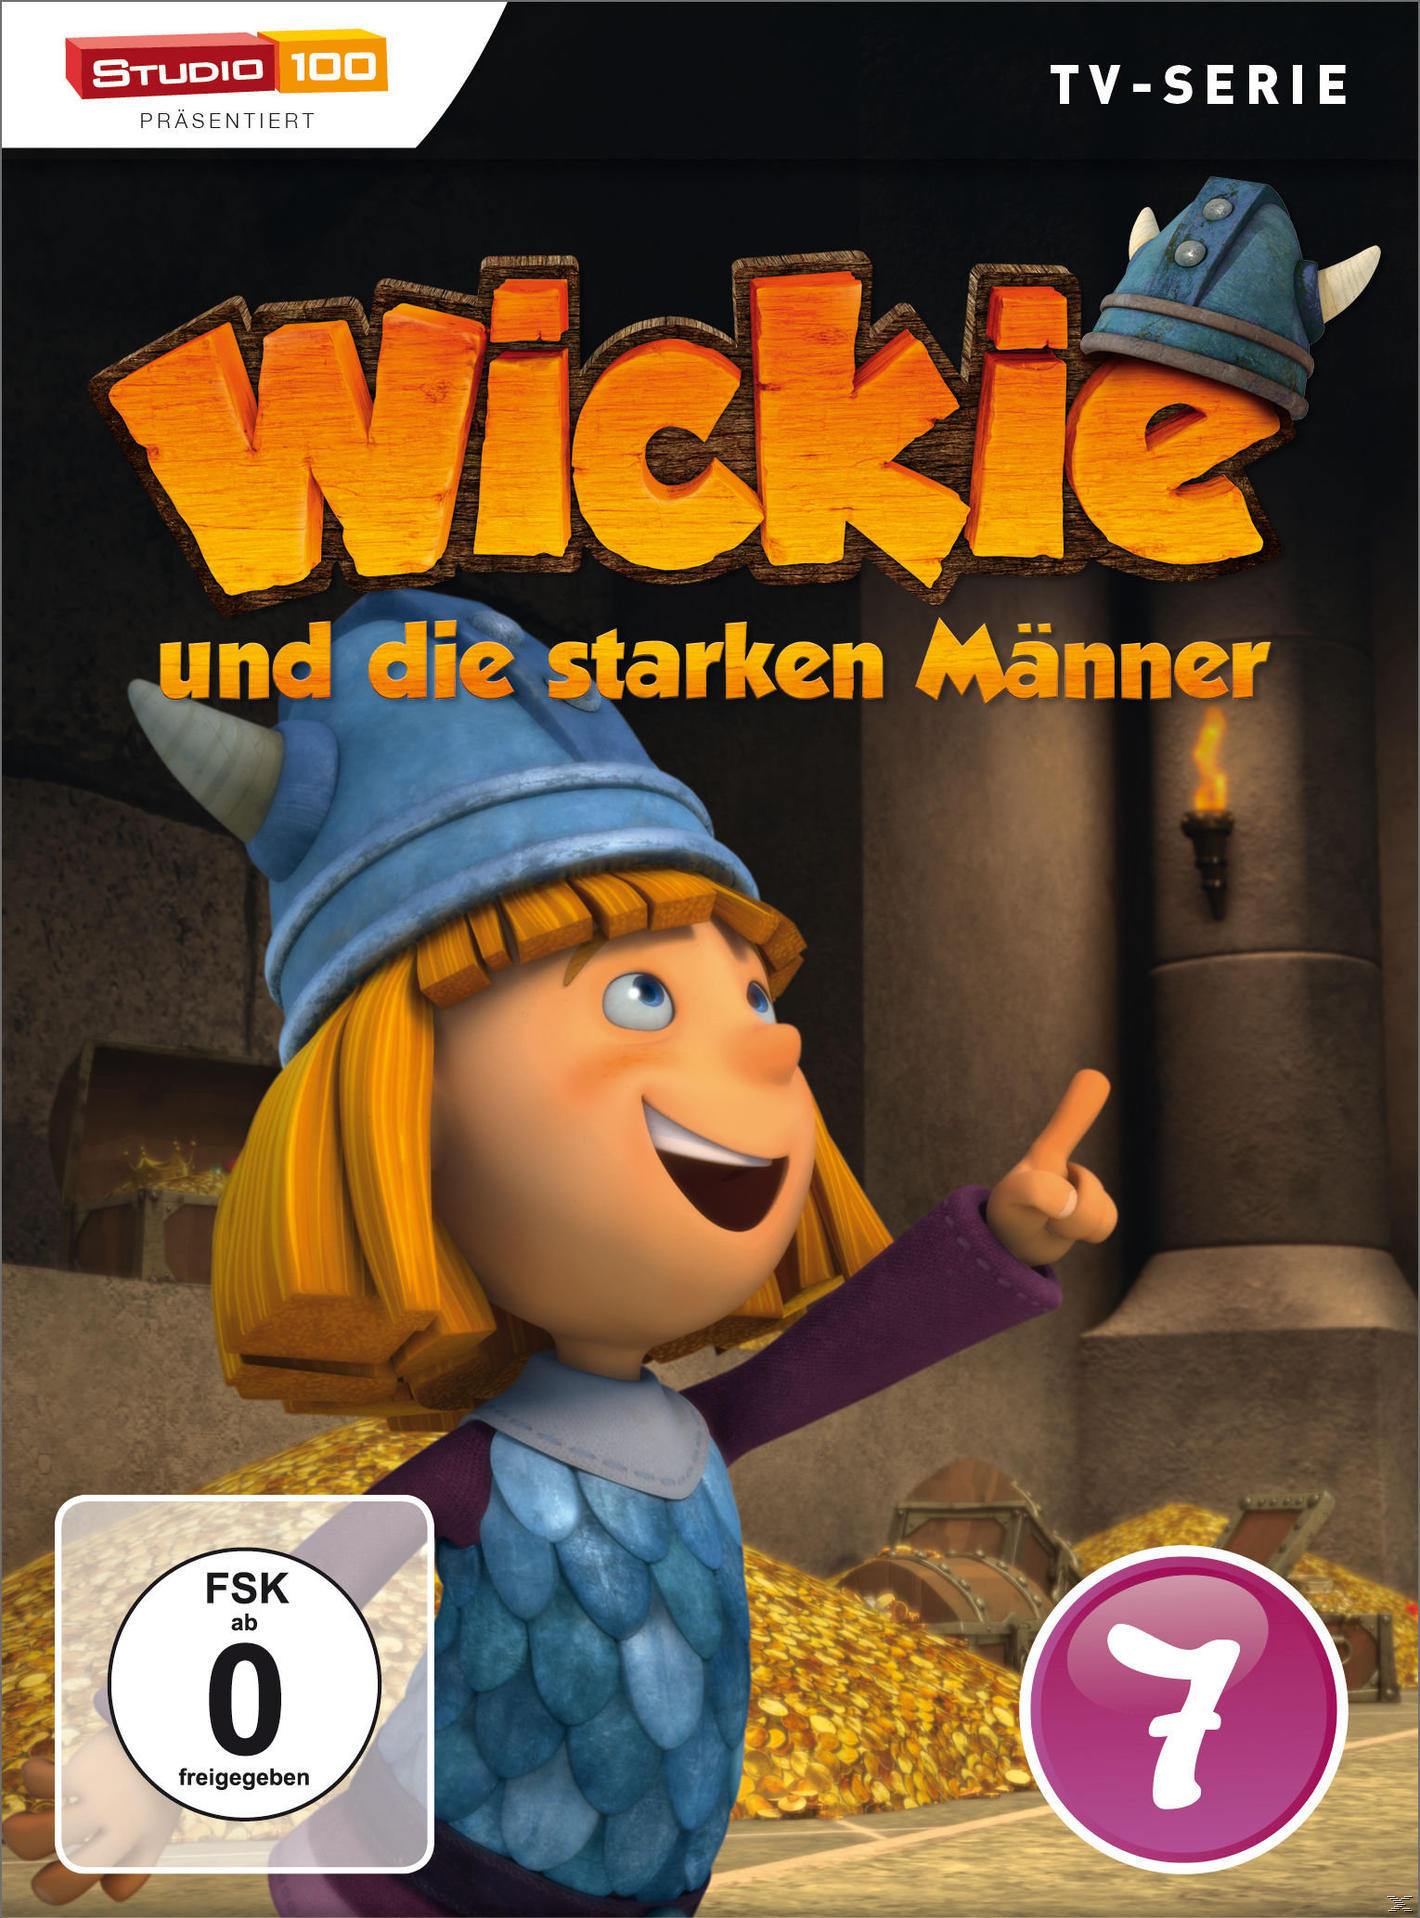 7 Wickie die Männer - starken und DVD DVD